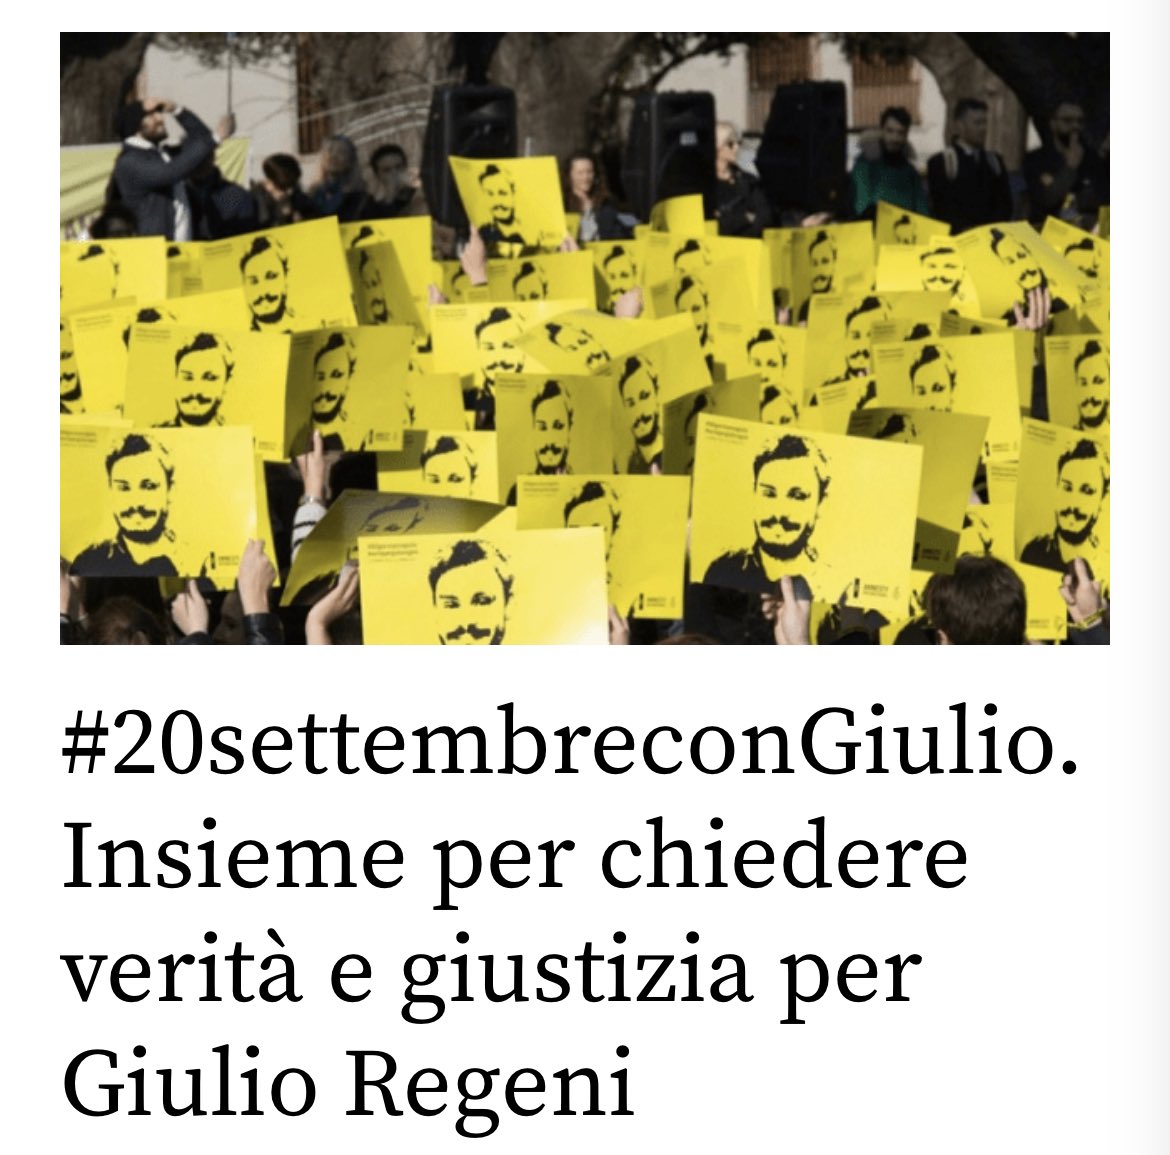 Oggi #scortamediatica per #GiulioRegeni 
#veritaegiustiziaperGiulioRegeni 
#20settembreconGiulio 
@GiulioSiamoNoi @PaolaDeffendi